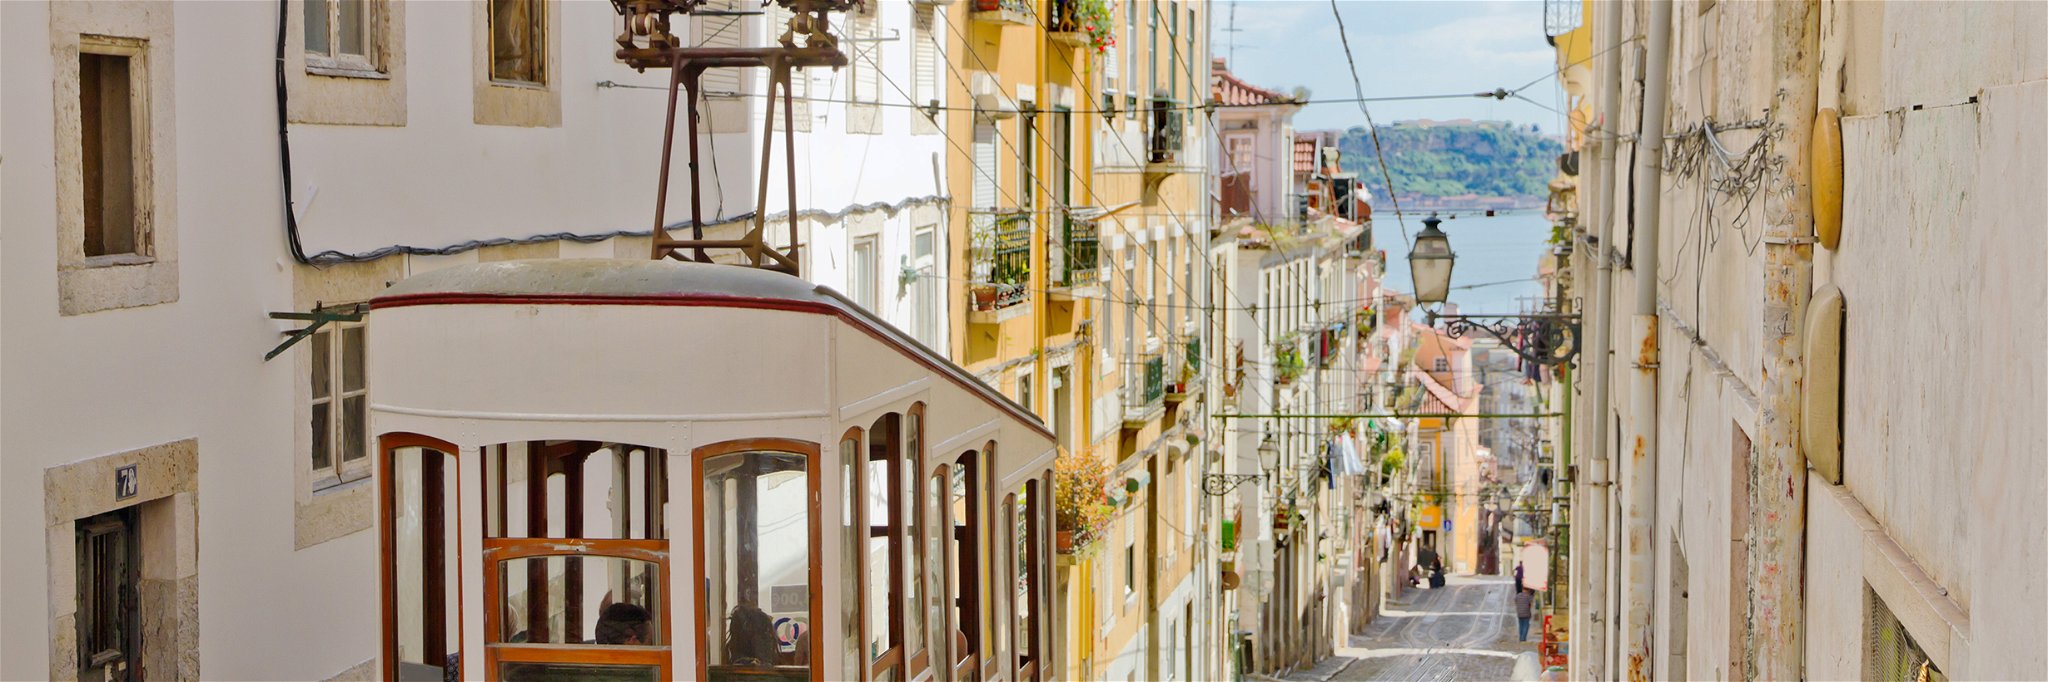 In Lissabon geht es mit den Coronazahlen steil bergauf – zum Leidwesen der Einheimischen und der Touristen.